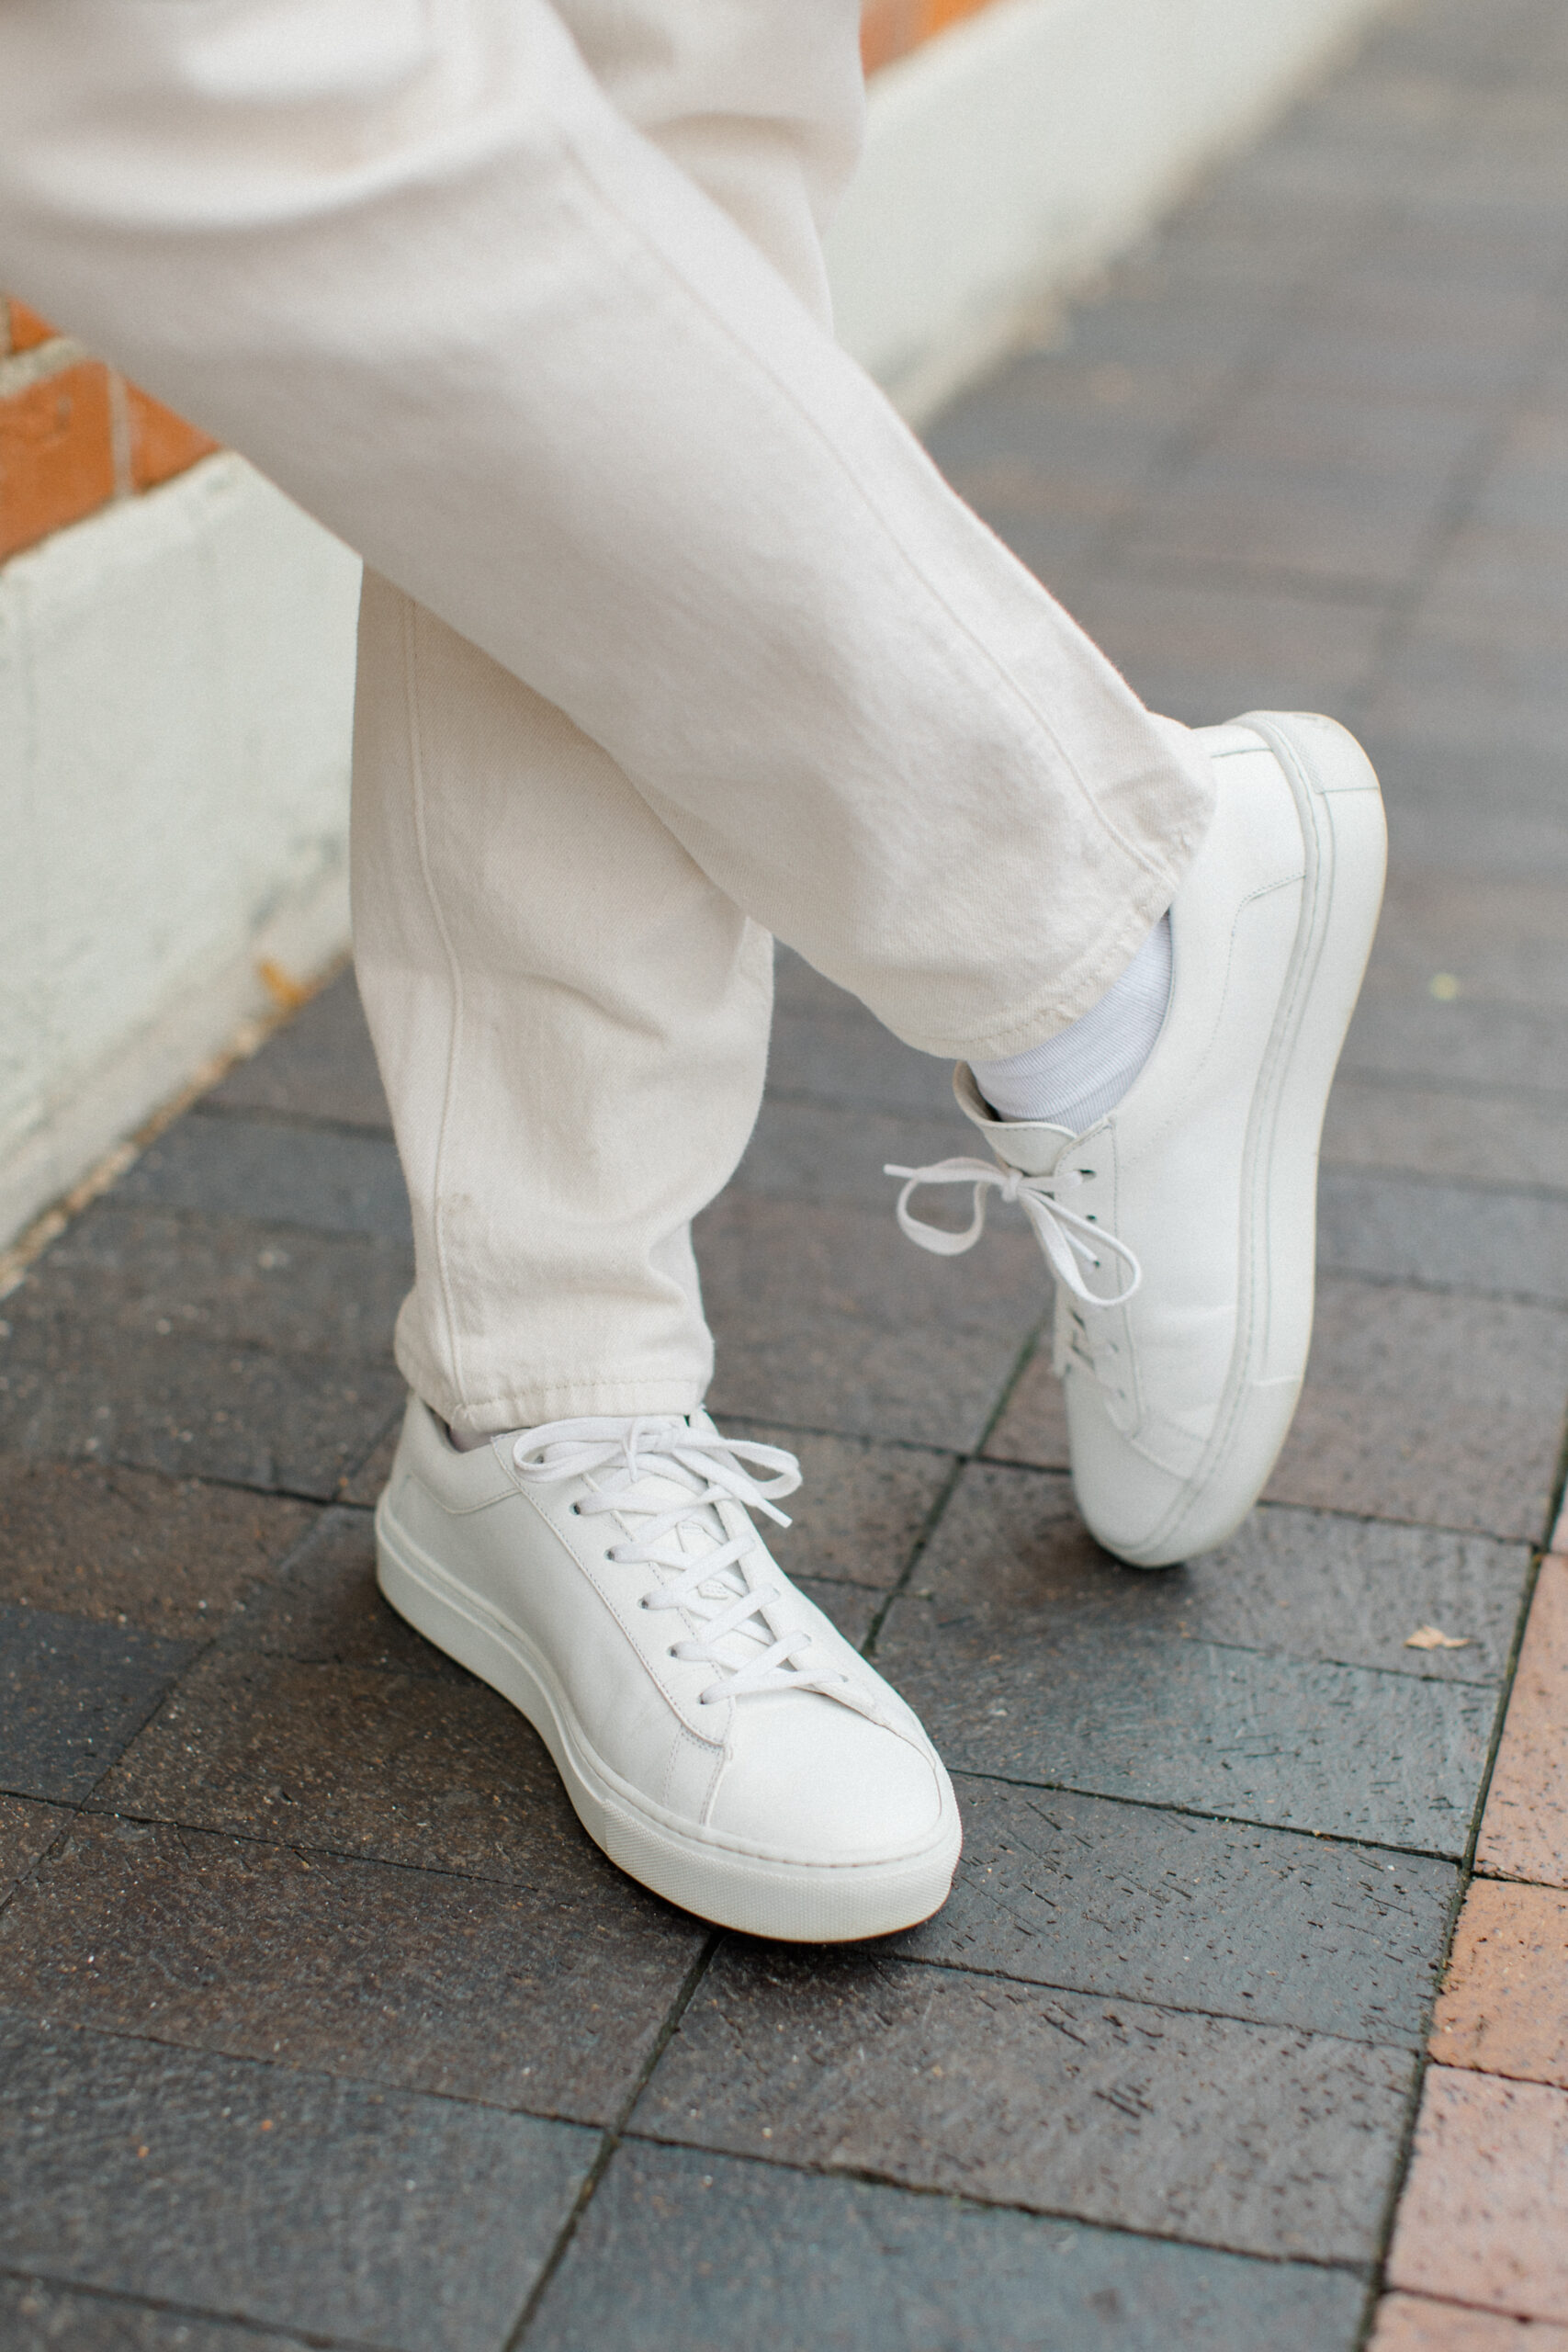 White sneakers at every price point: Koio Capri Triple White